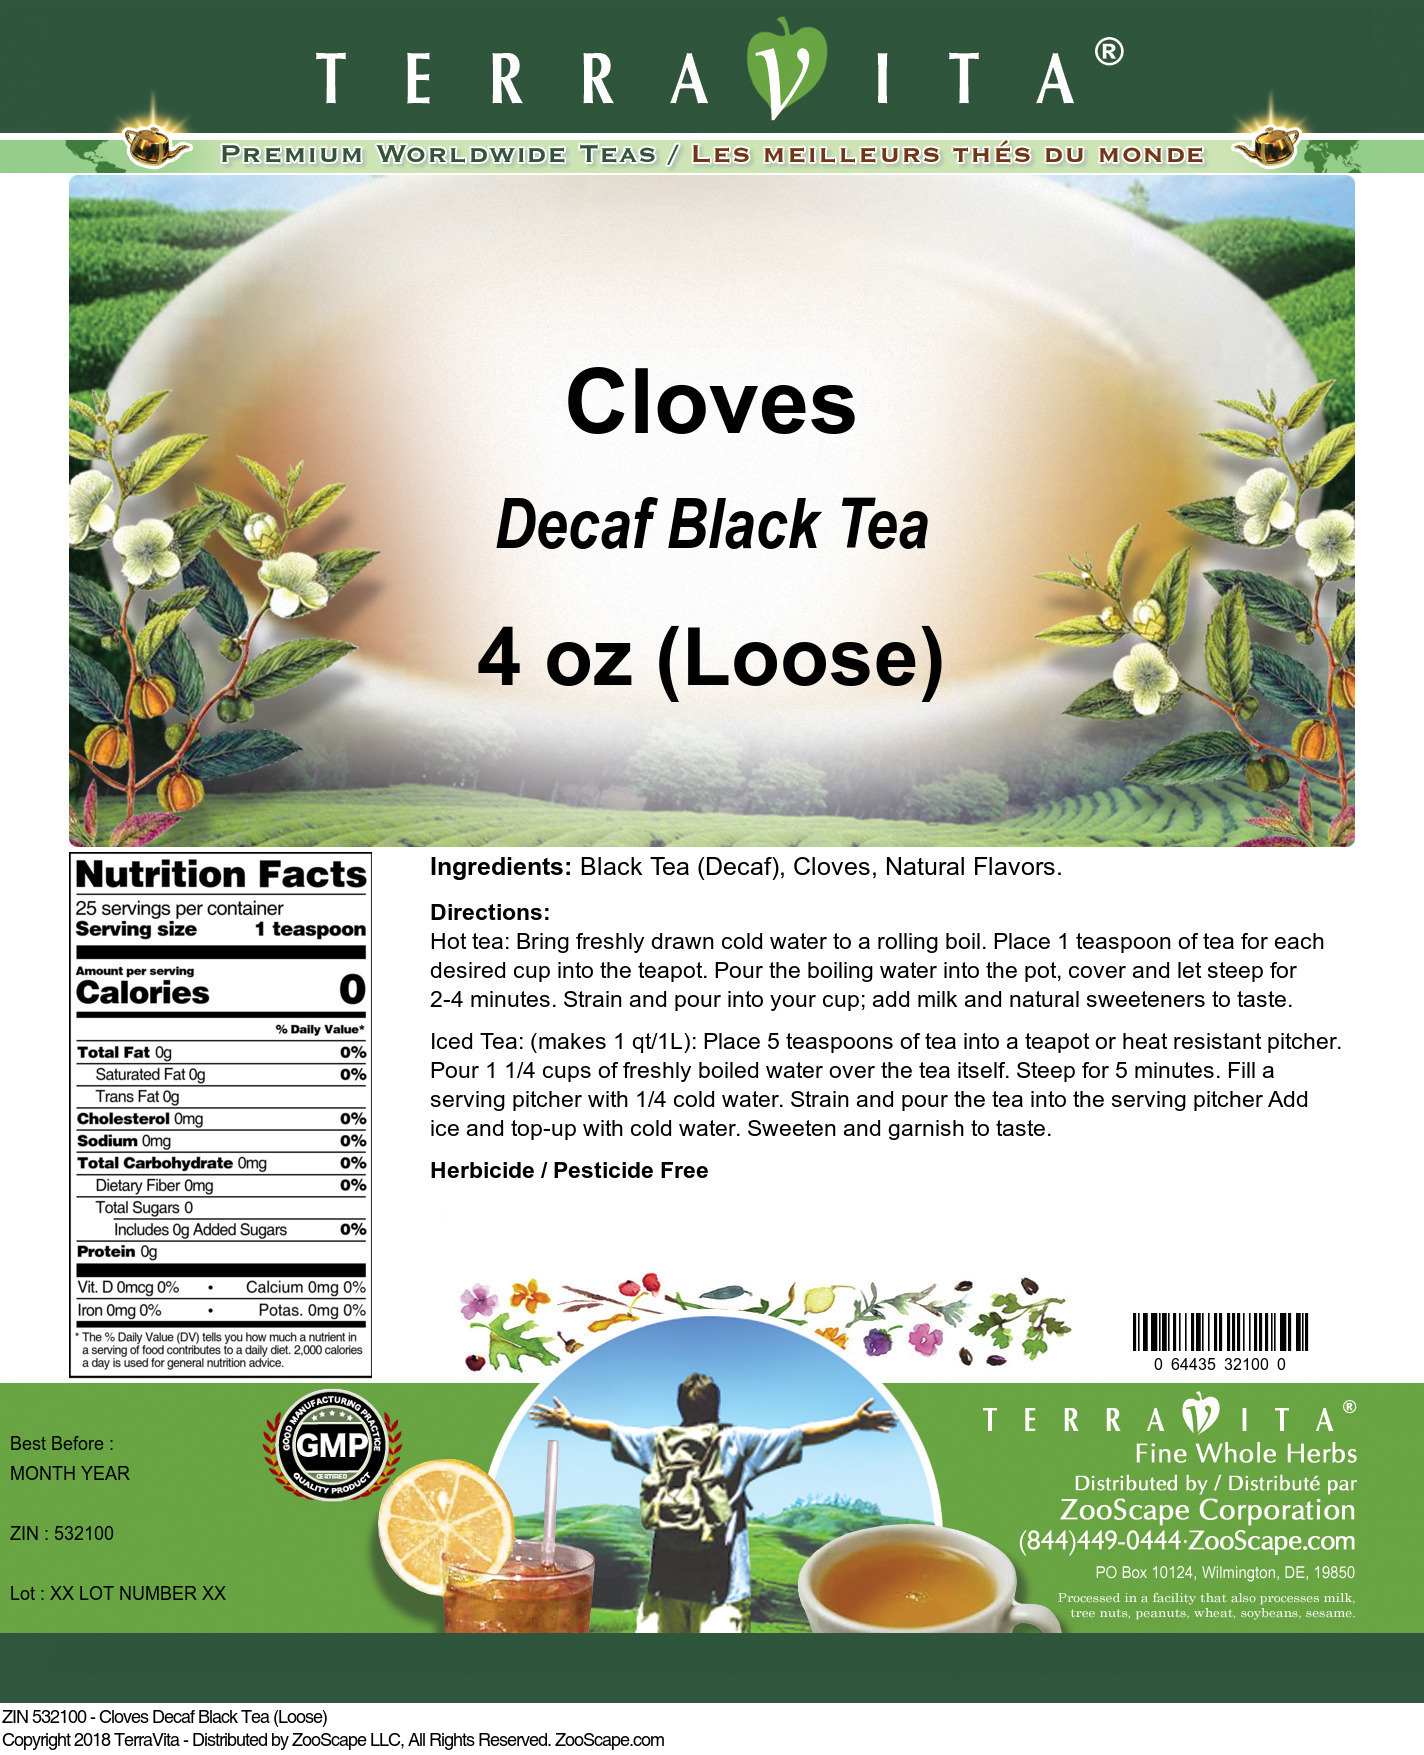 Cloves Decaf Black Tea (Loose) - Label